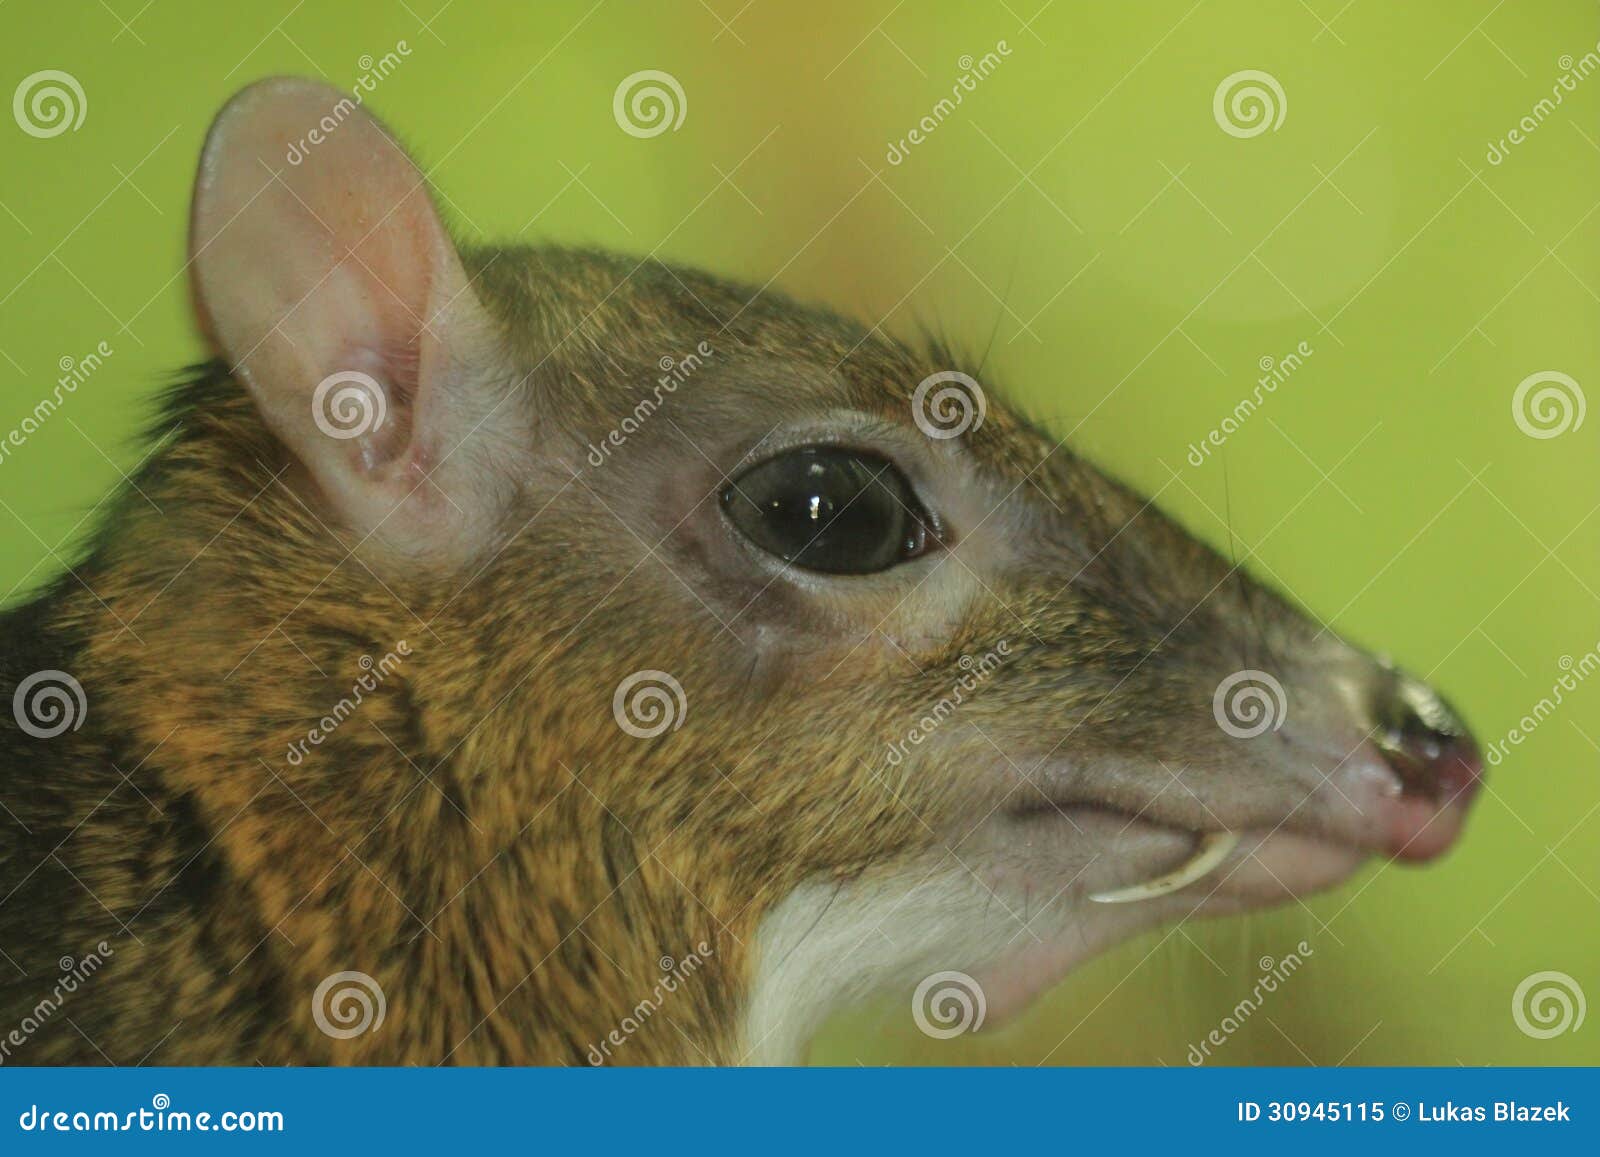 一点鼠鹿 库存照片. 图片 包括有 哺乳动物, 鼠标, 较少, 室外, 酒精, 唯一, 逗人喜爱, 野生生物 - 38405174